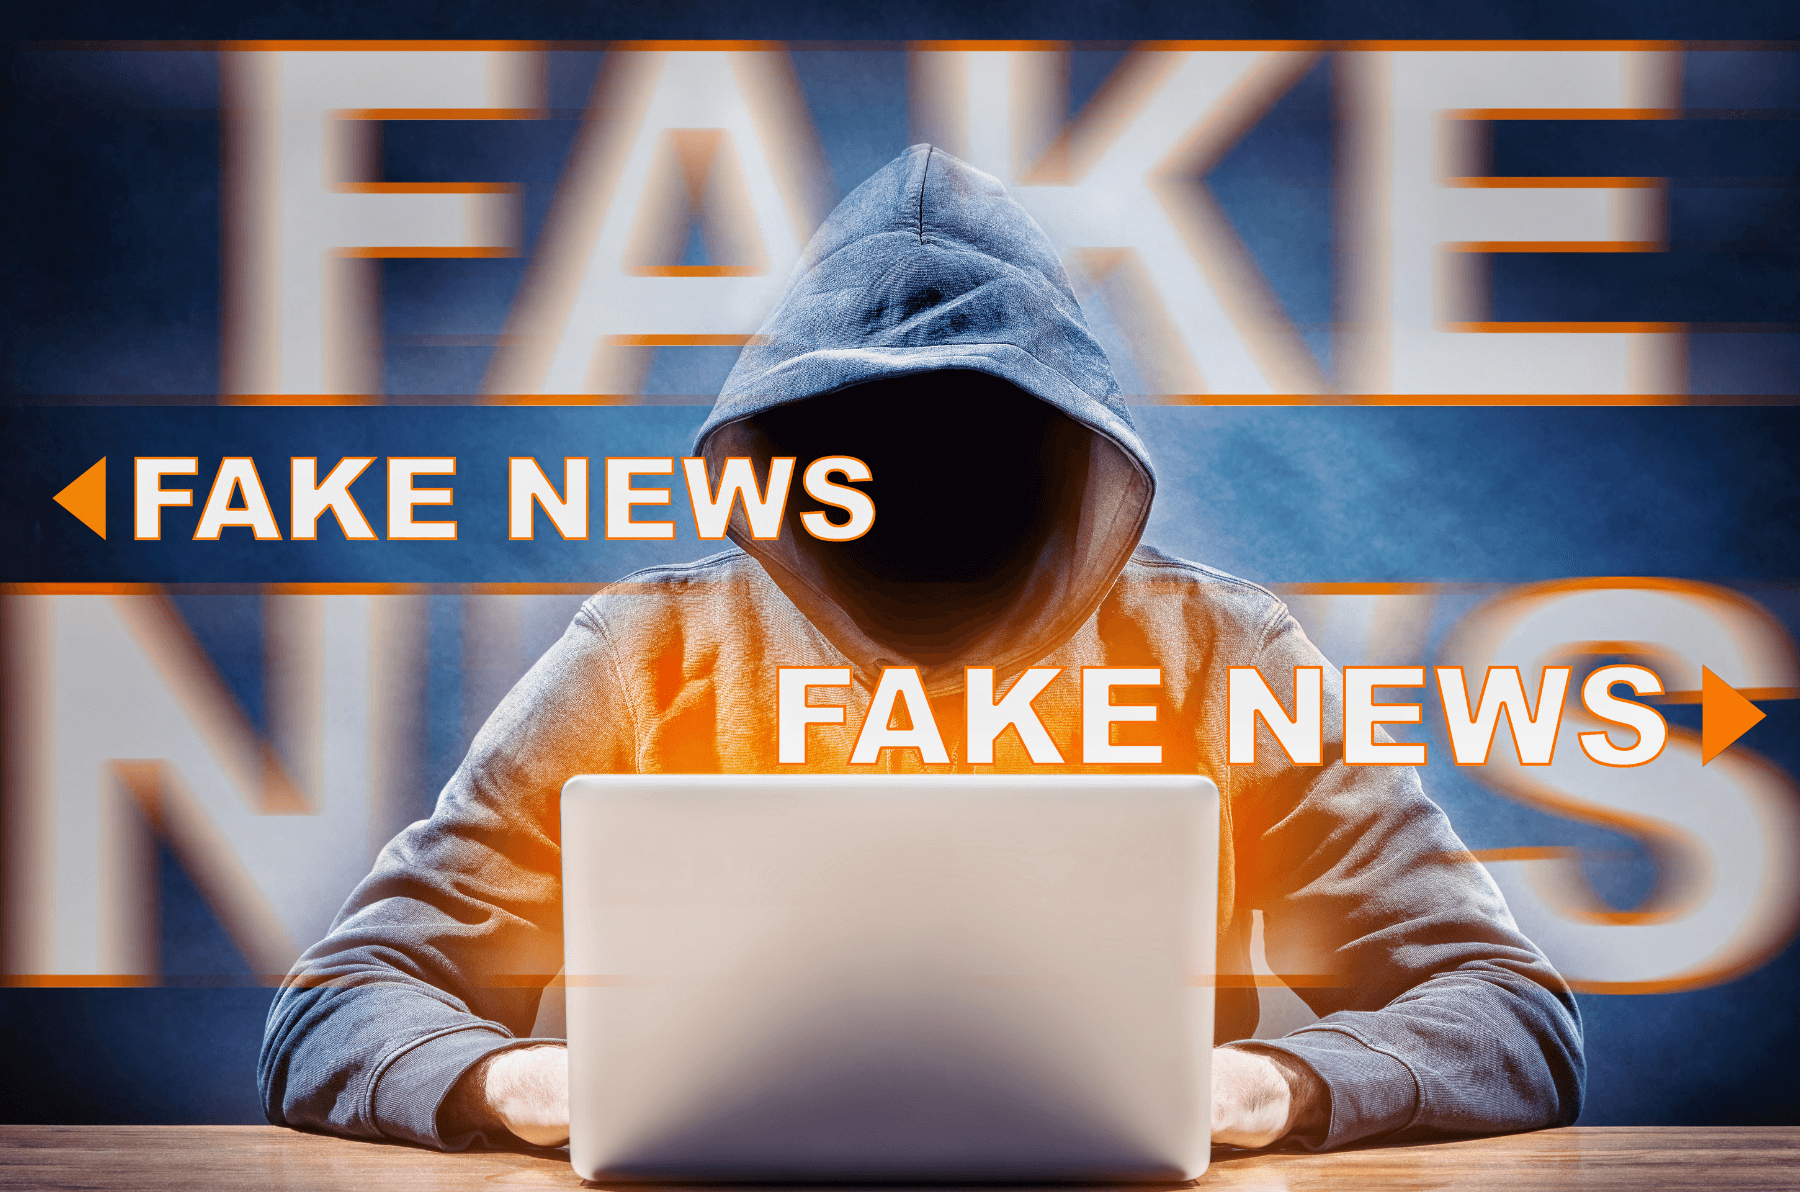 guy in hoody posting fake news online